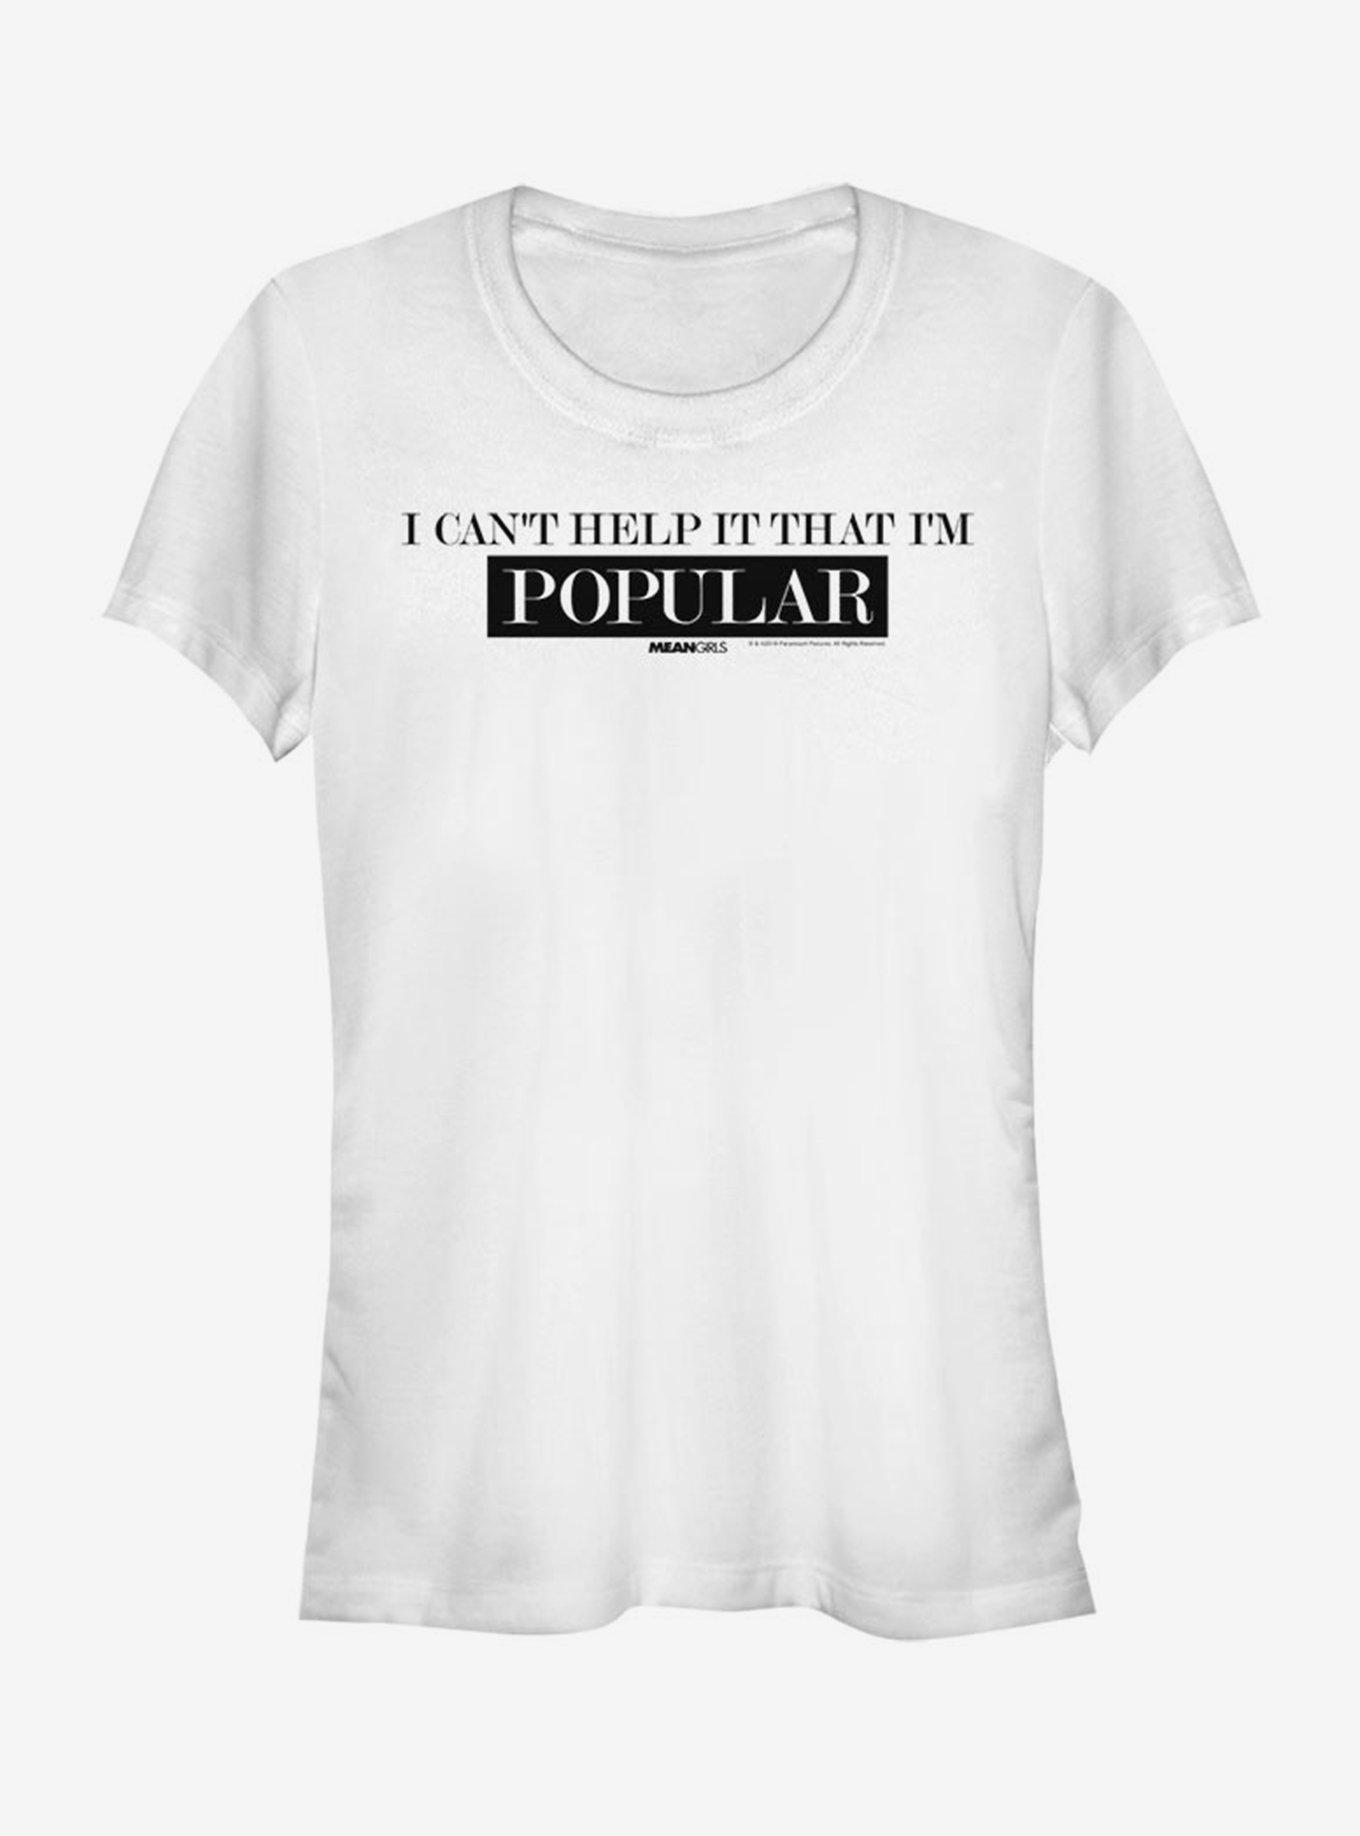 Mean Girls Popular Girls T-Shirt, WHITE, hi-res